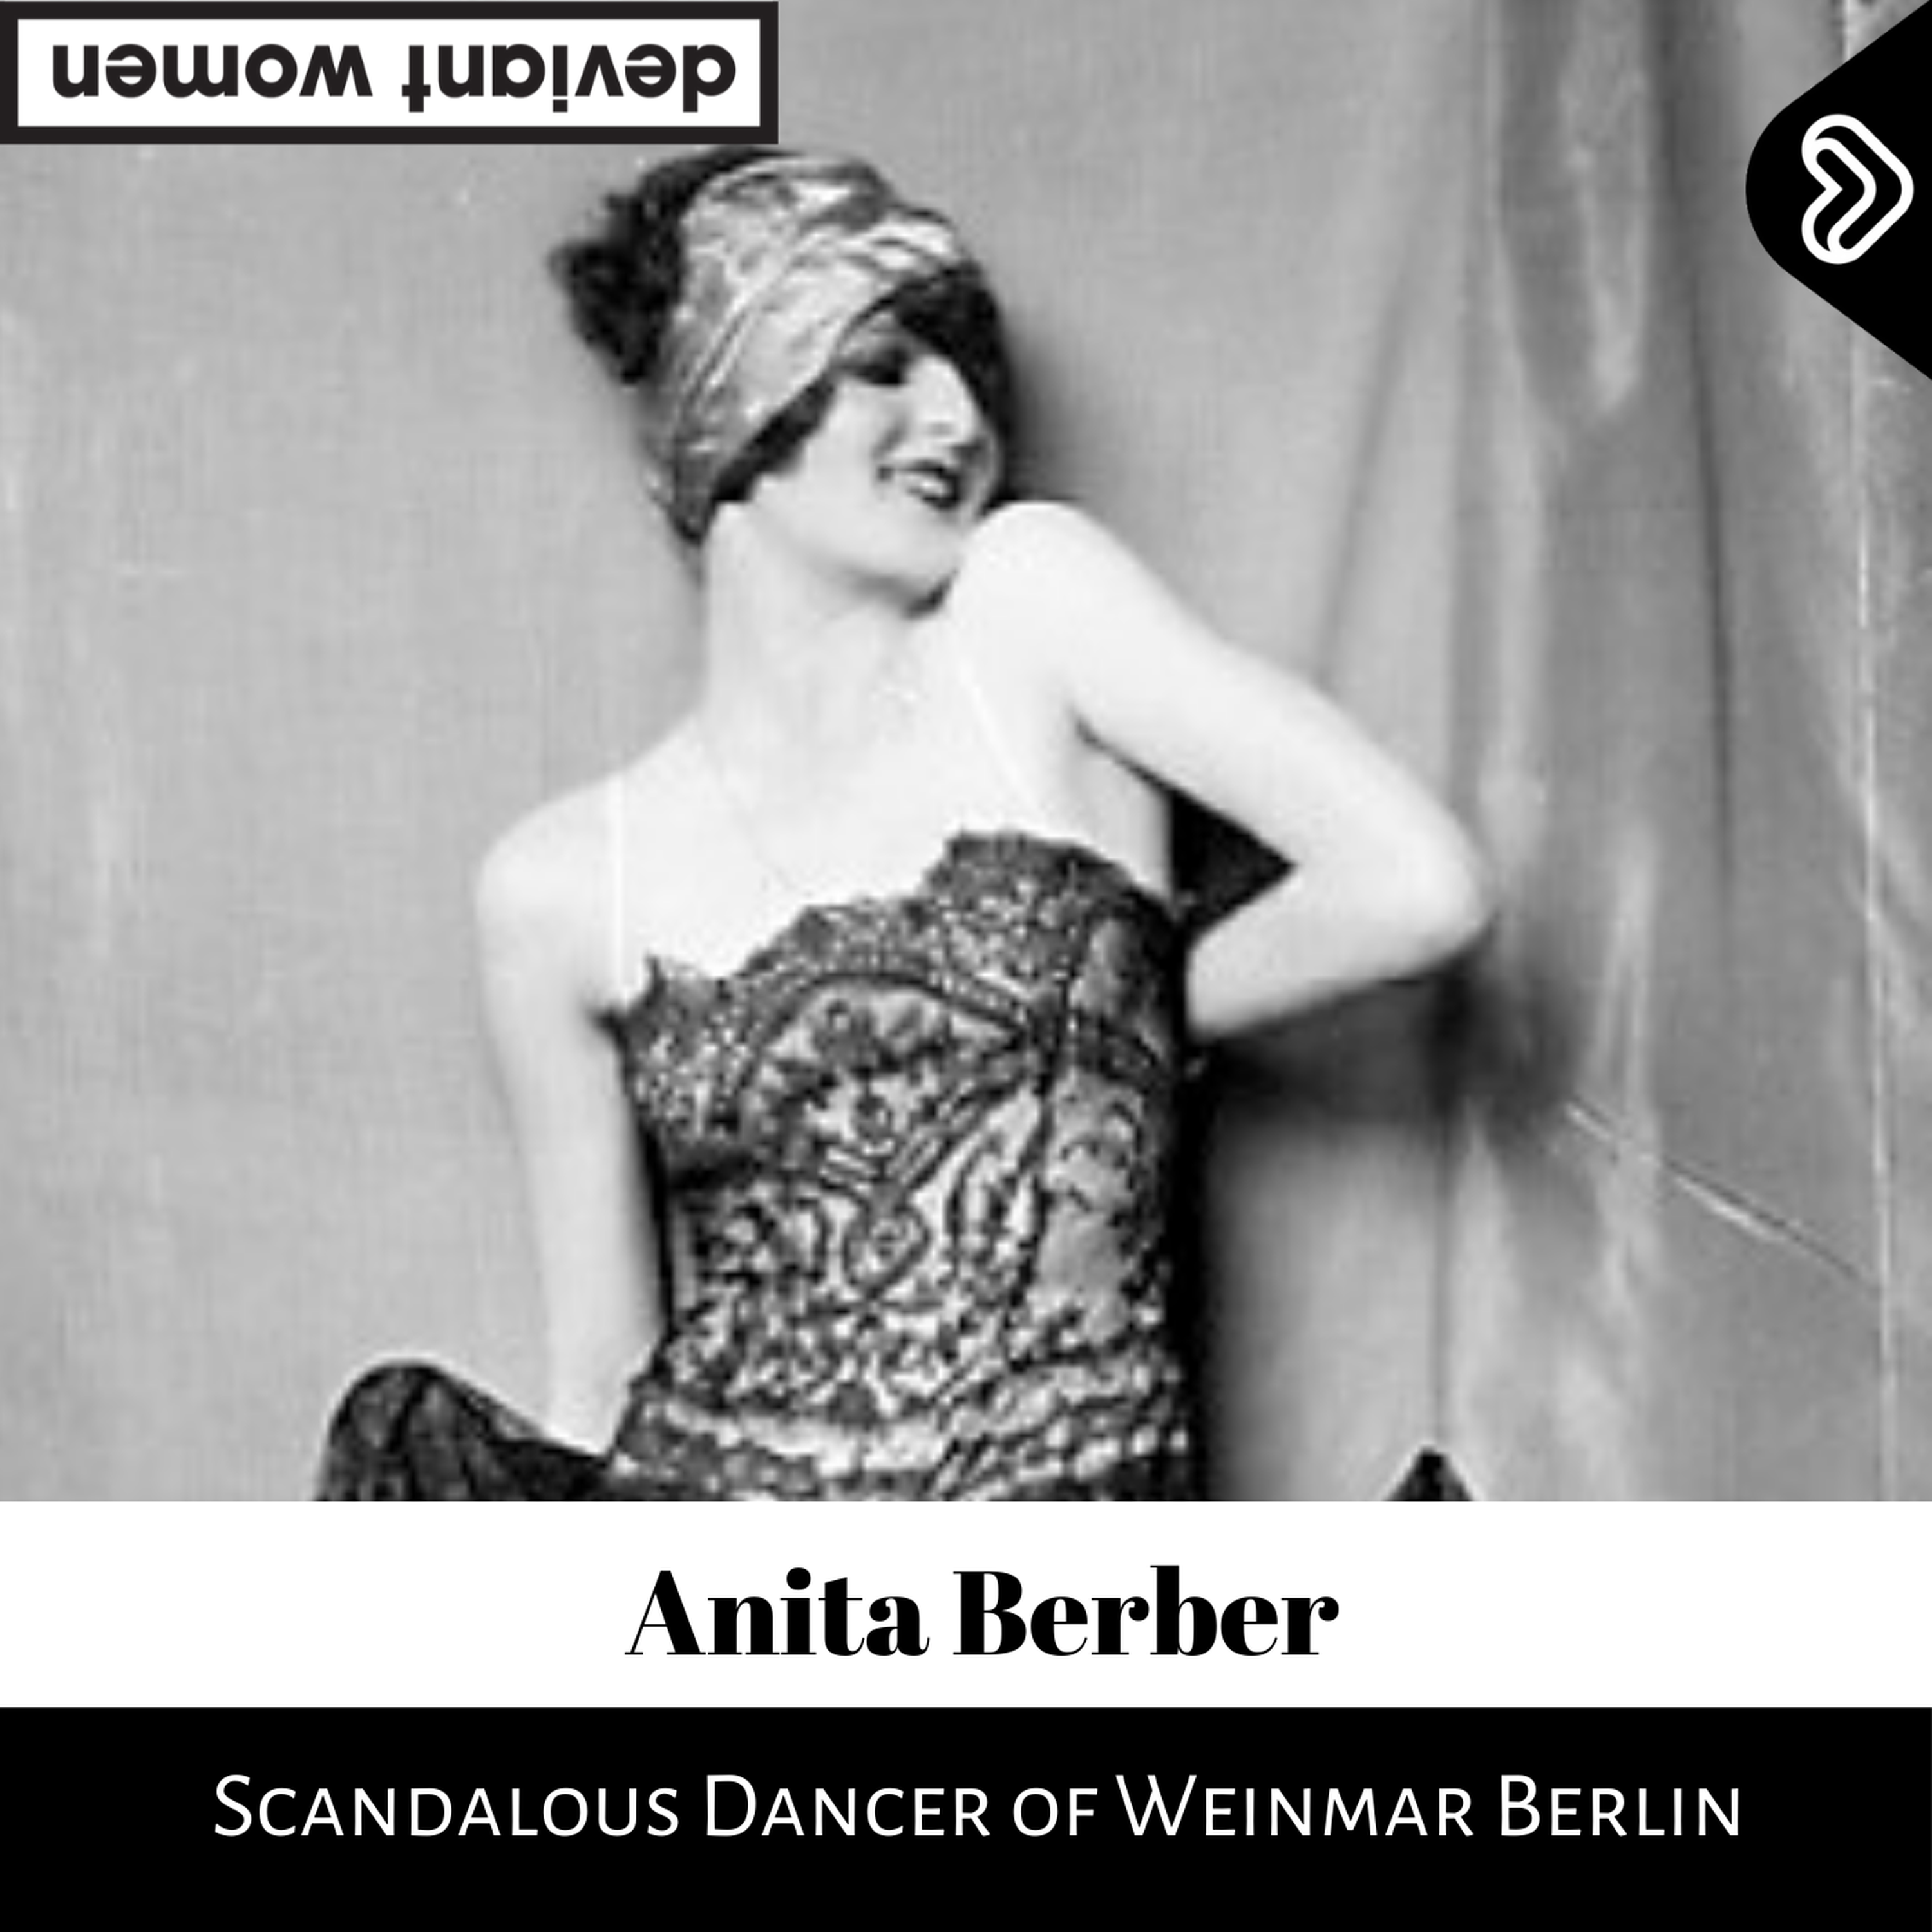 Anita Berber